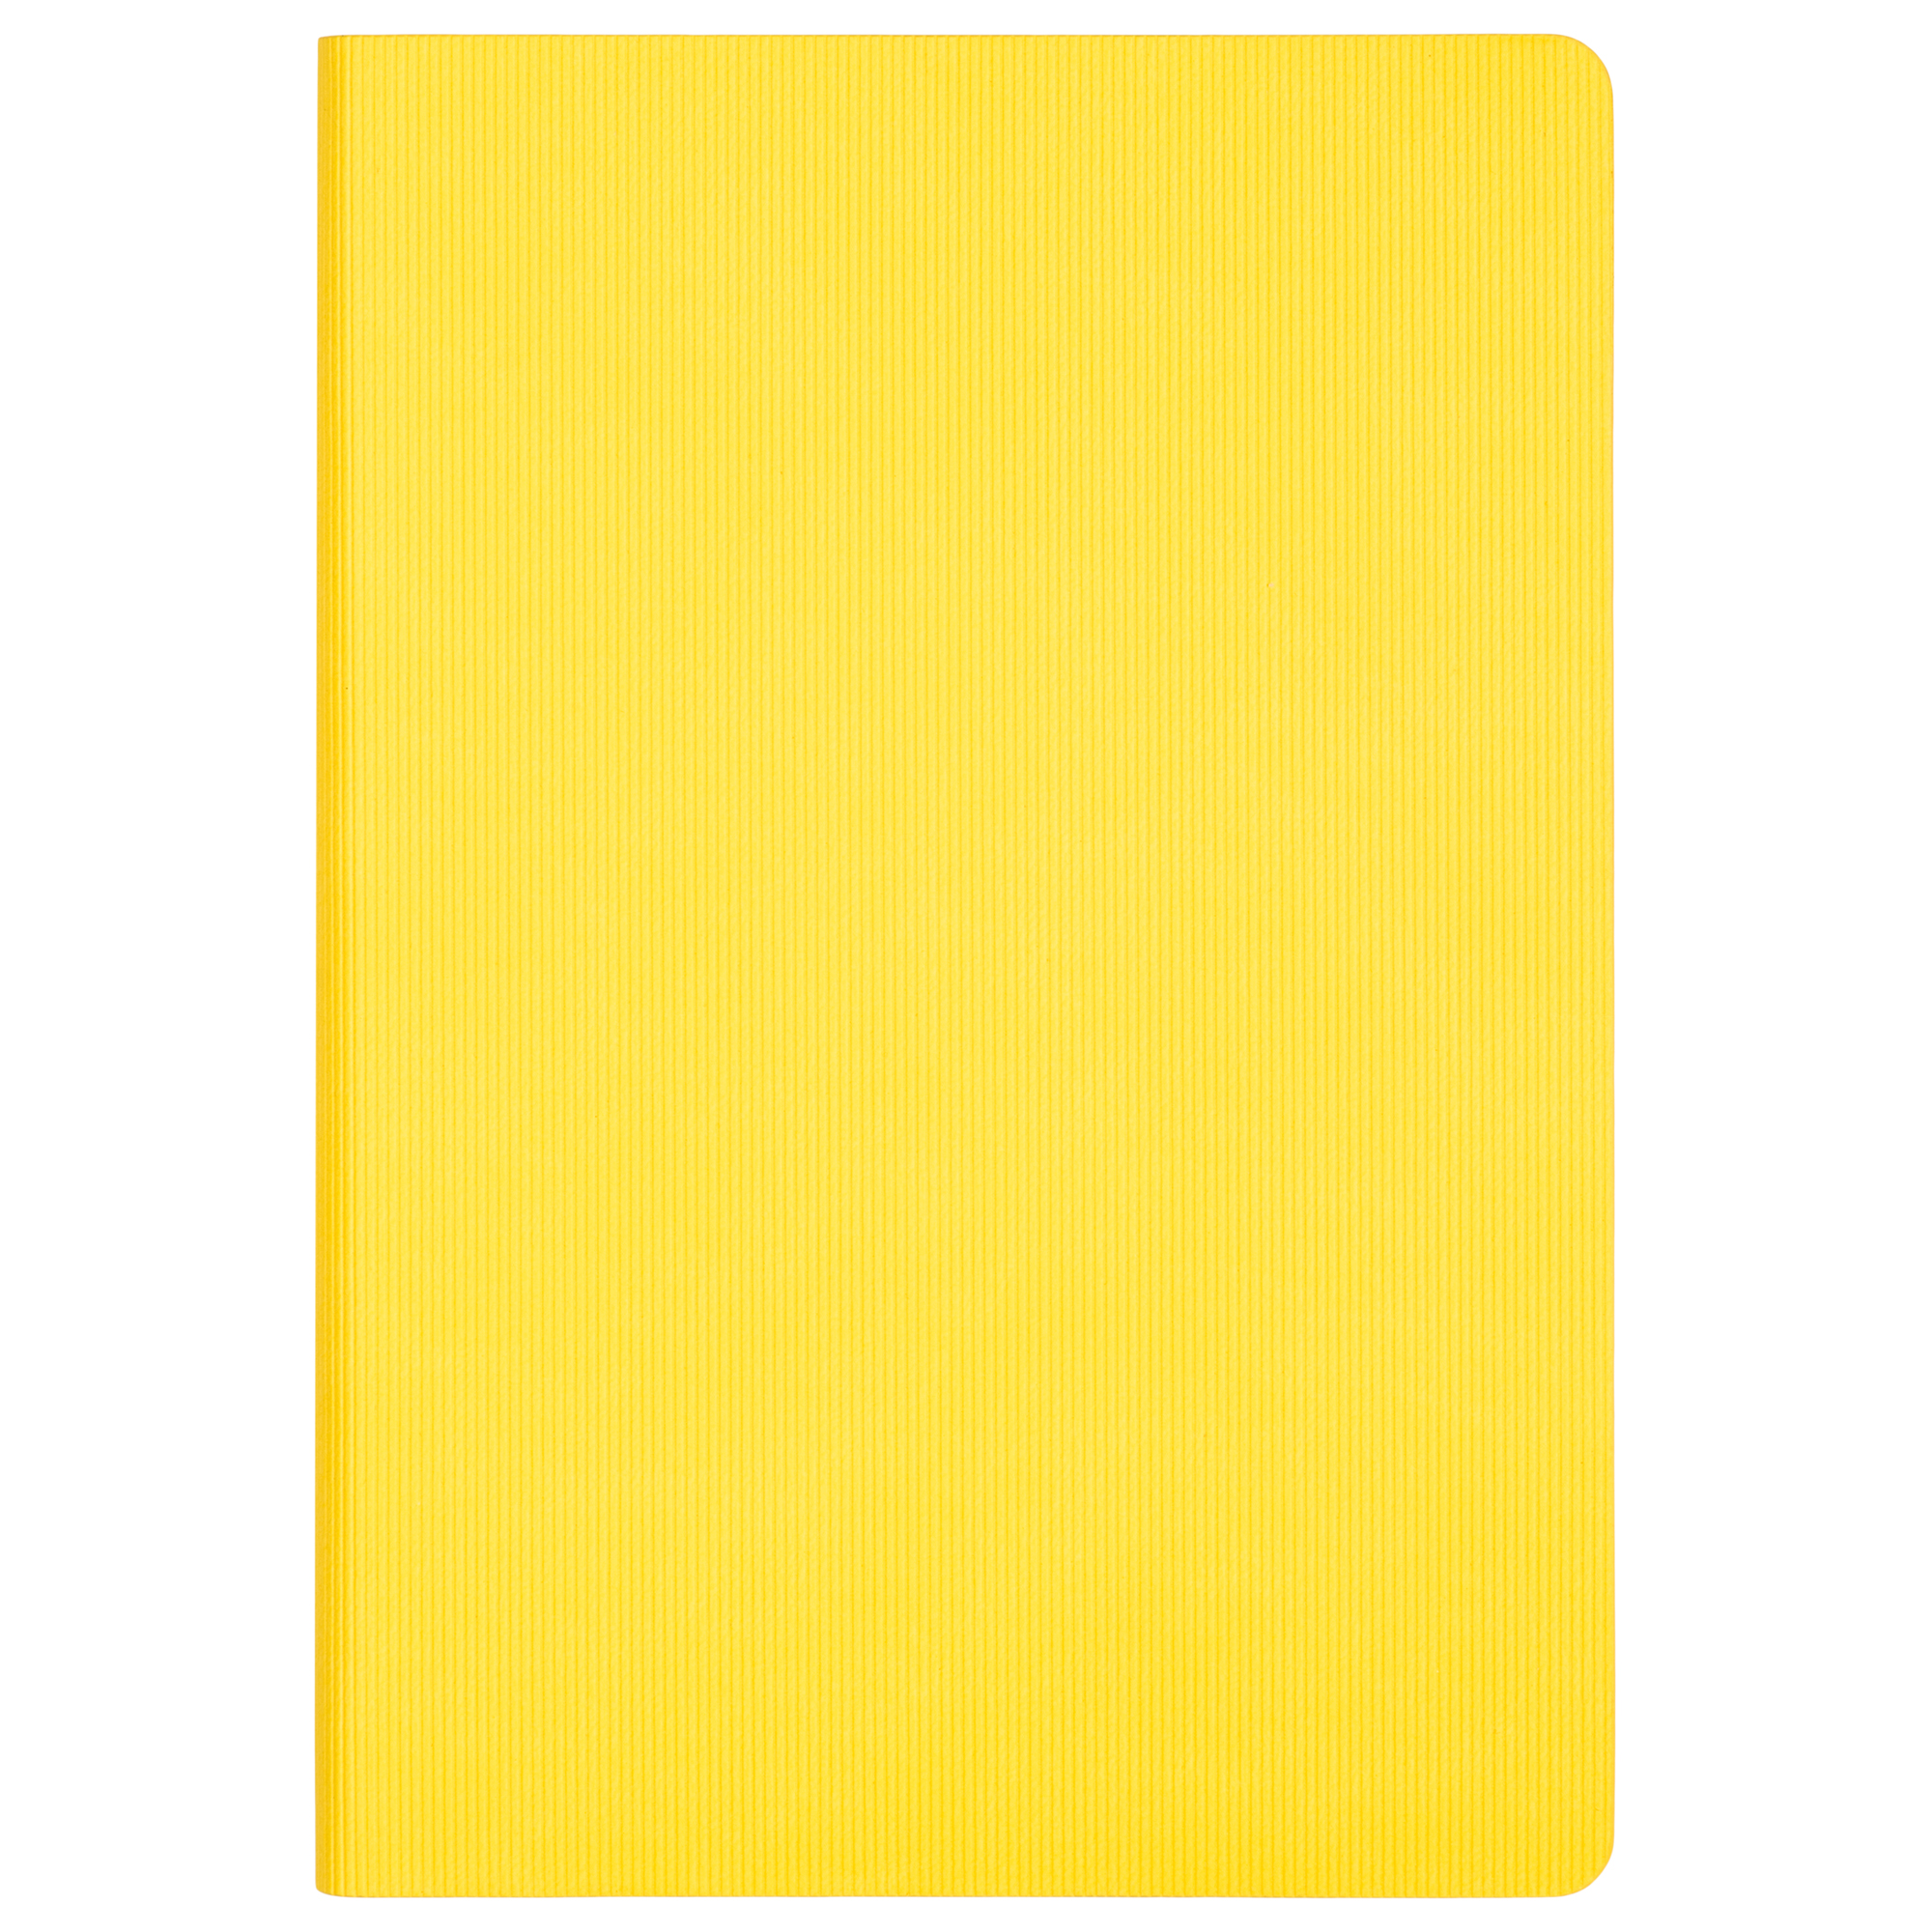 Ежедневник Portobello Trend, Rain, недатированный, желтый (без упаковки, без стикера)